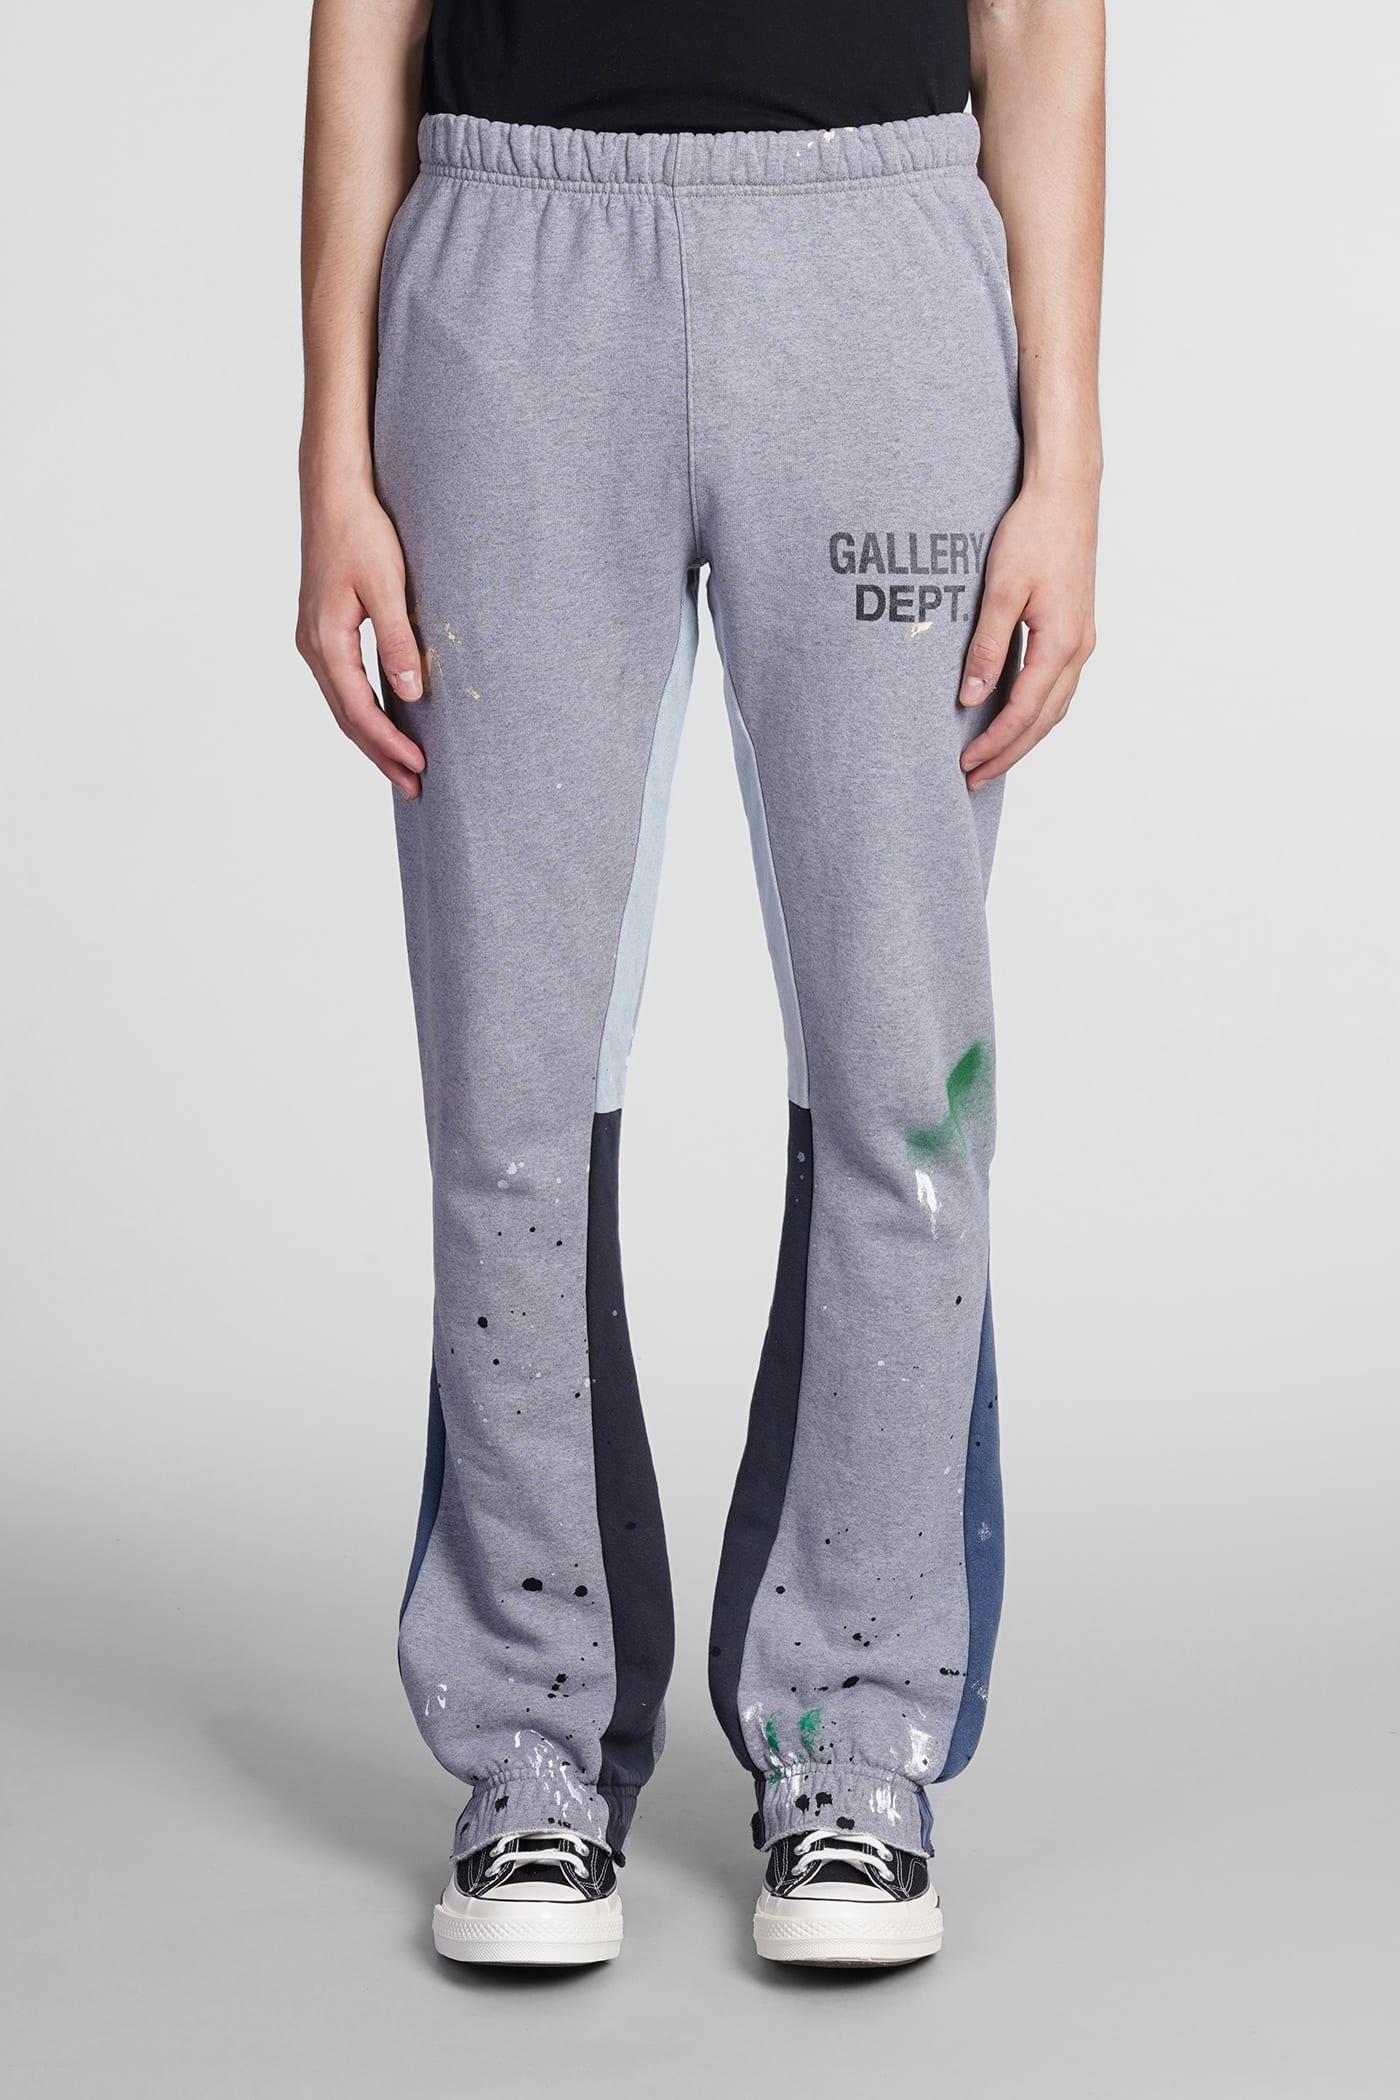 GALLERY DEPT. Pants In Grey Cotton in Grey for Men | Lyst UK